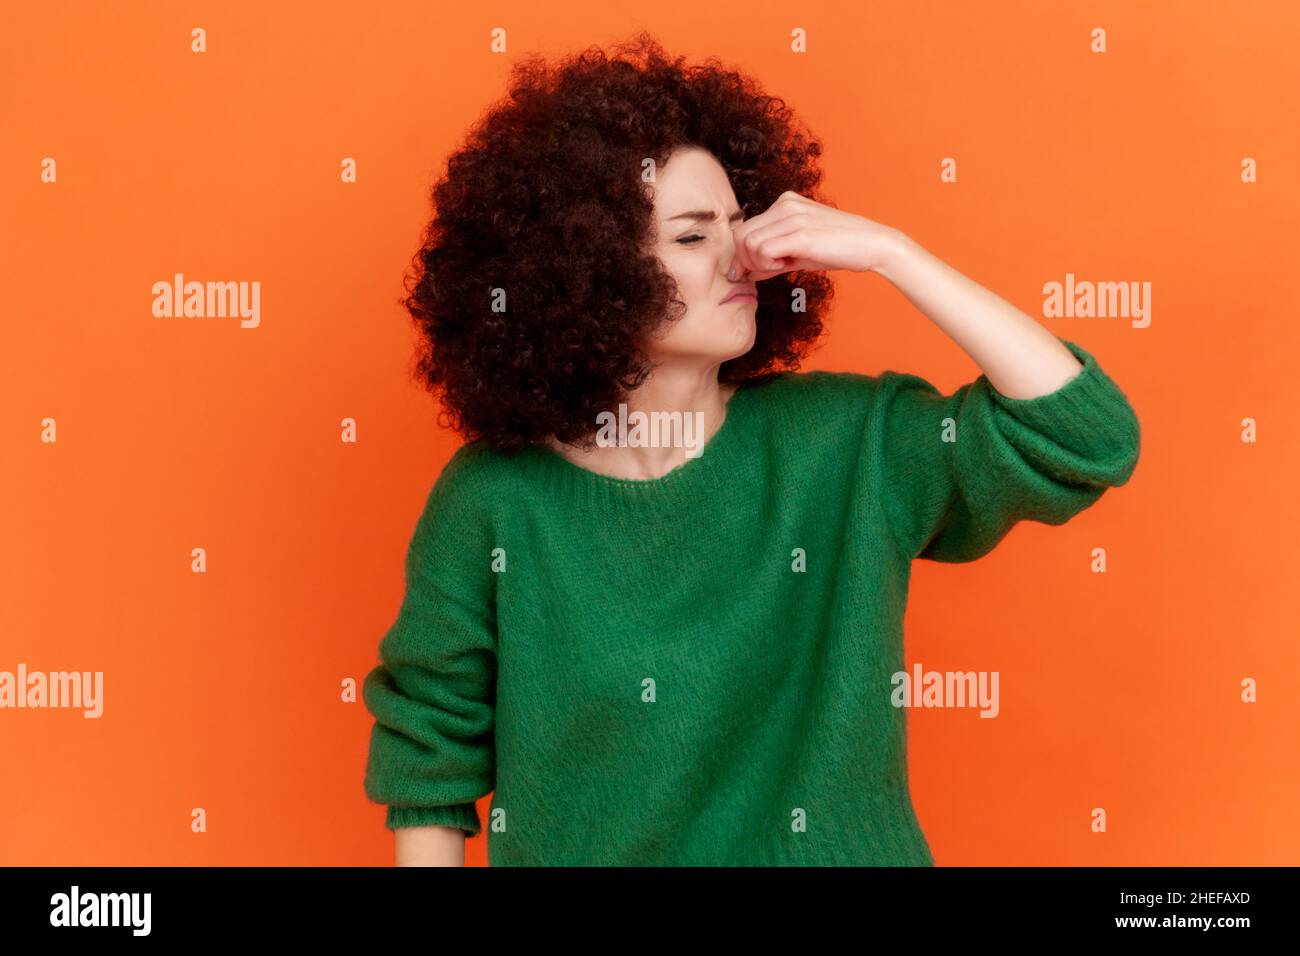 Portrait d'une jeune femme adulte avec une coiffure afro portant un chandail vert de style décontracté tenant la respiration avec les doigts sur le nez, odeur piquant, fart.Studio d'intérieur isolé sur fond orange. Banque D'Images